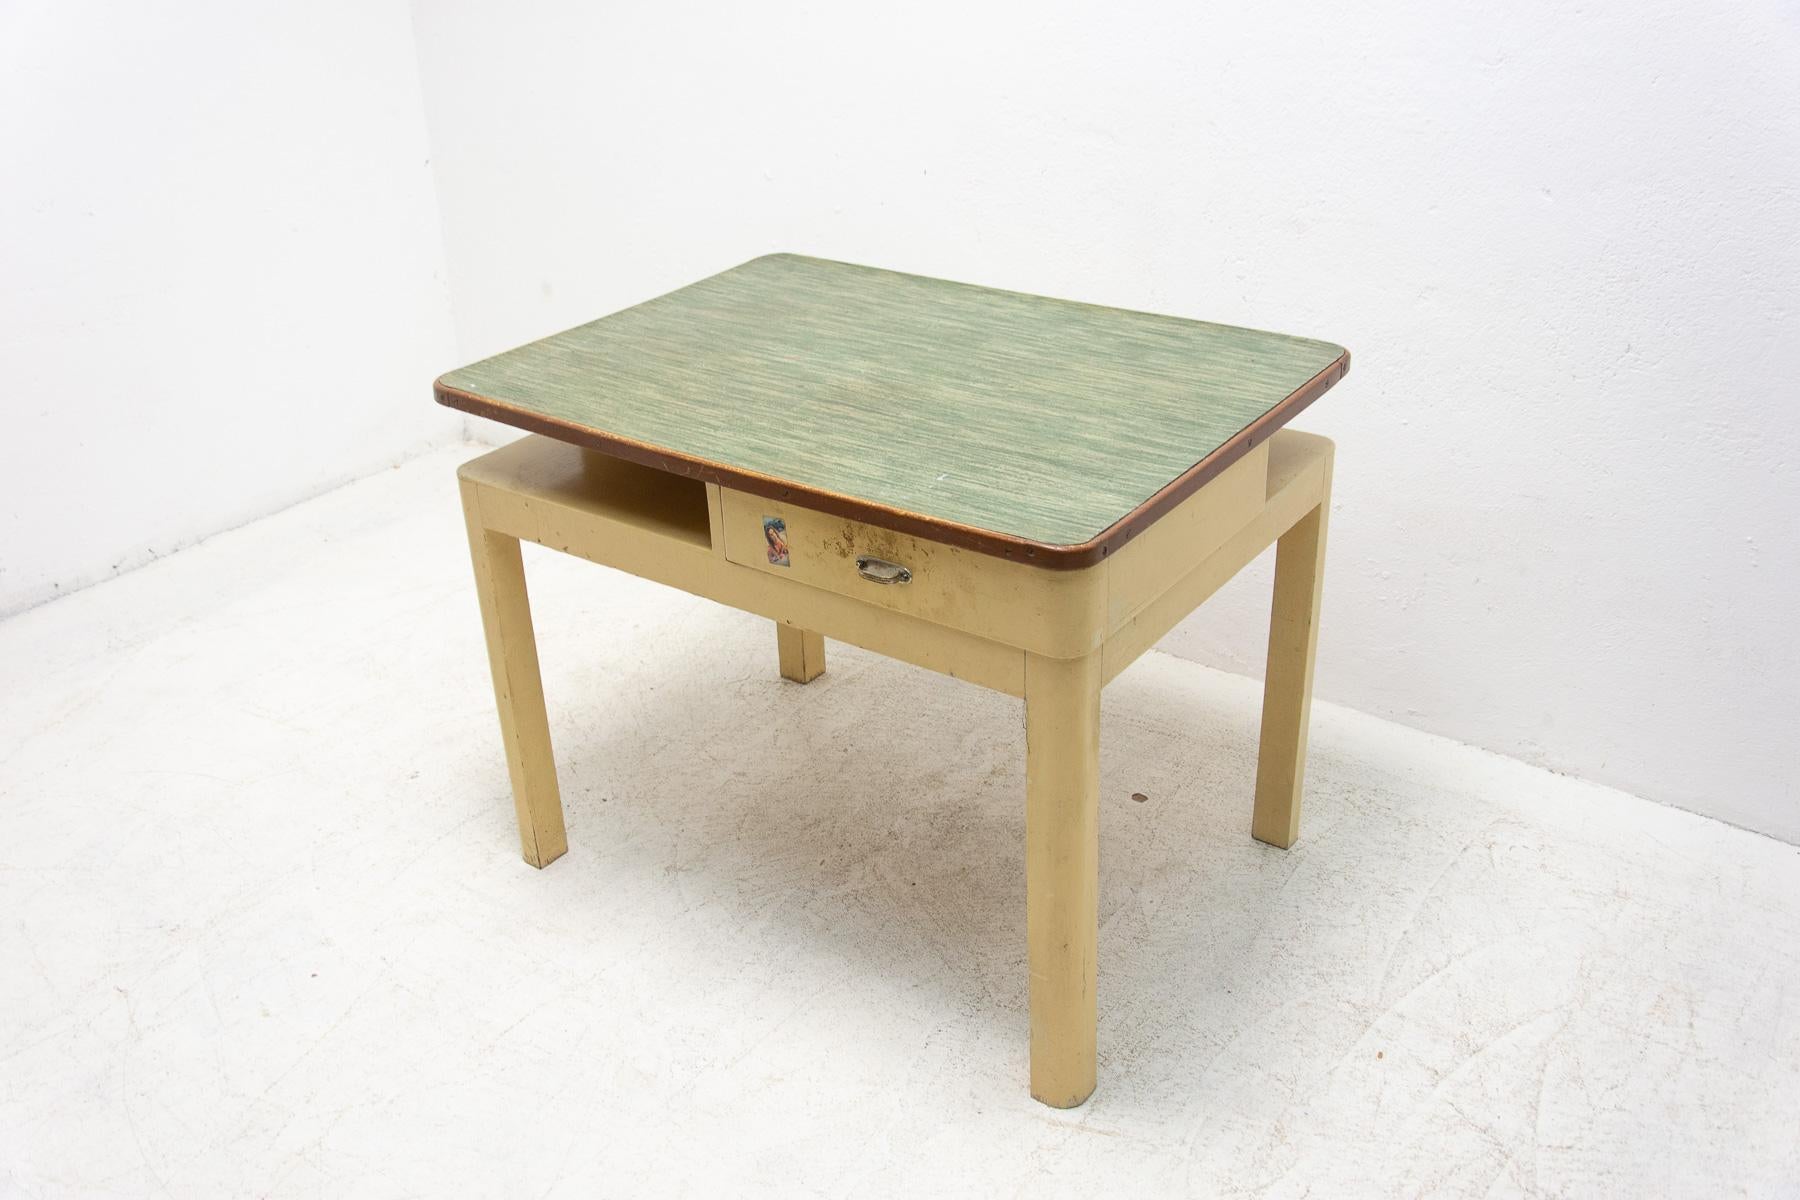 Table d'appoint du milieu du siècle avec un tiroir. Il a été fabriqué dans l'ancienne Tchécoslovaquie dans les années 1950. La table est faite de bois et de formica et peinte en ivoire. L'ensemble est en bon état Vintage, montre des signes d'âge et